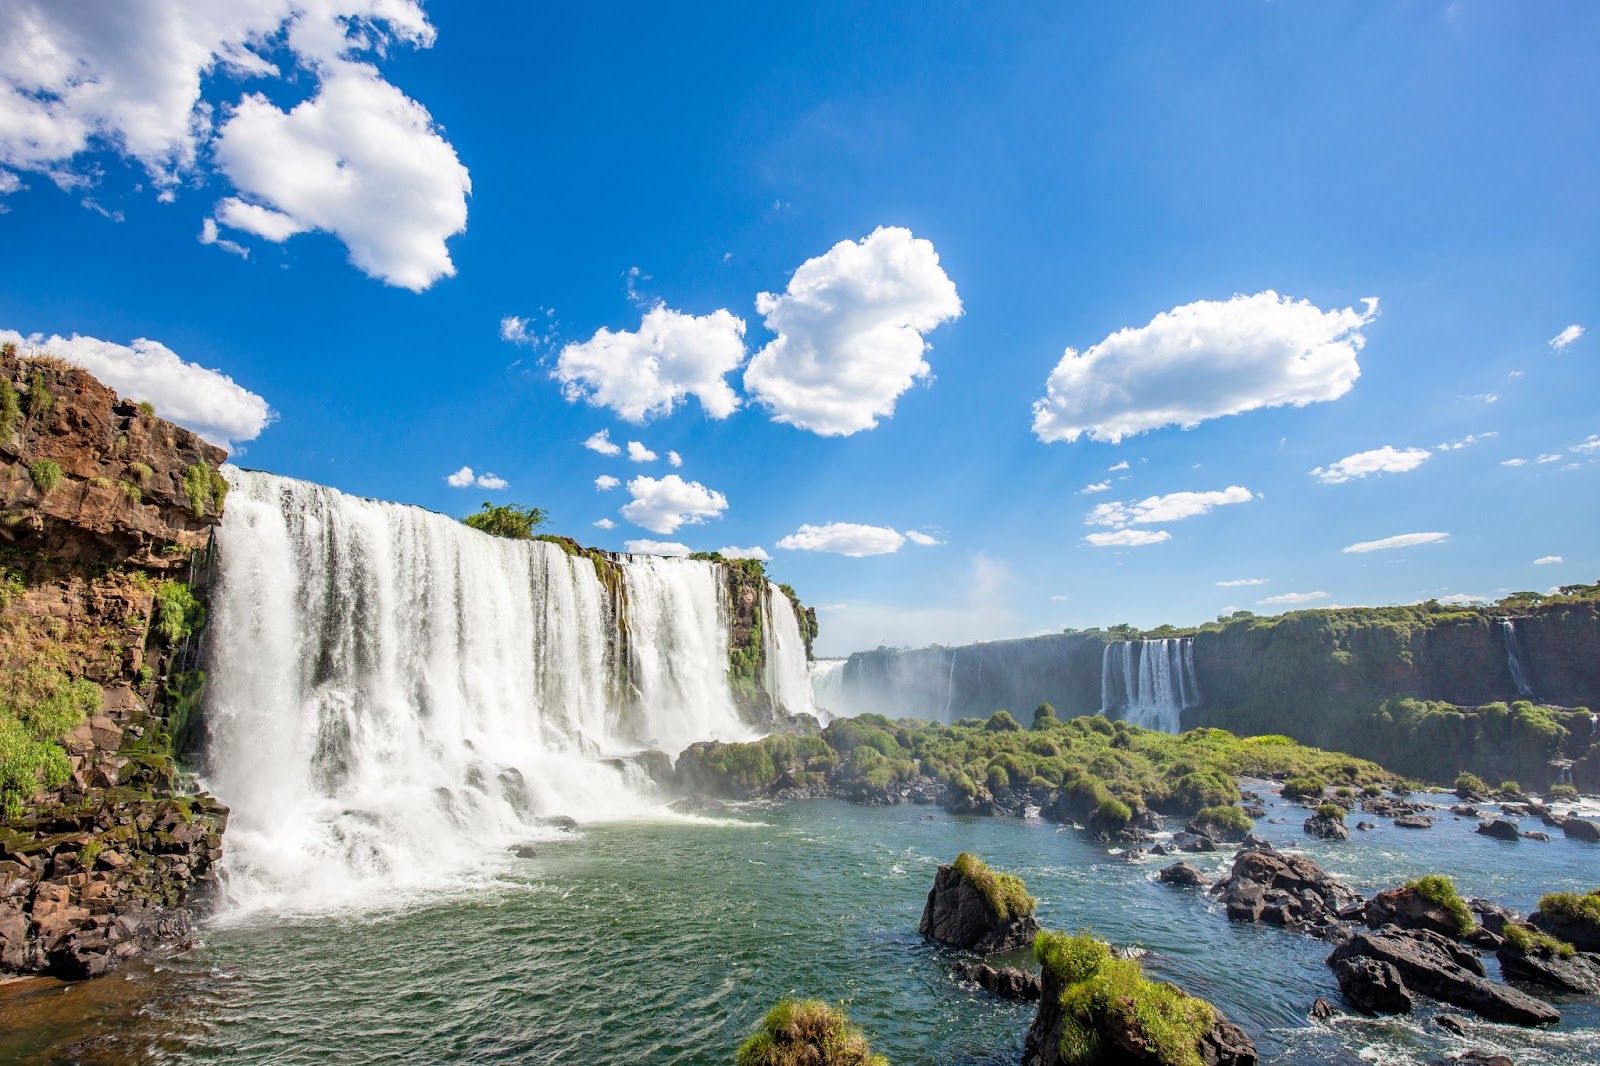 Quedas d’água do Parque Nacional do Iguaçu. Elas caem de paredões cobertos por vegetação rasteira e verde. Ao fundo, o céu azul aparece com poucas nuvens.